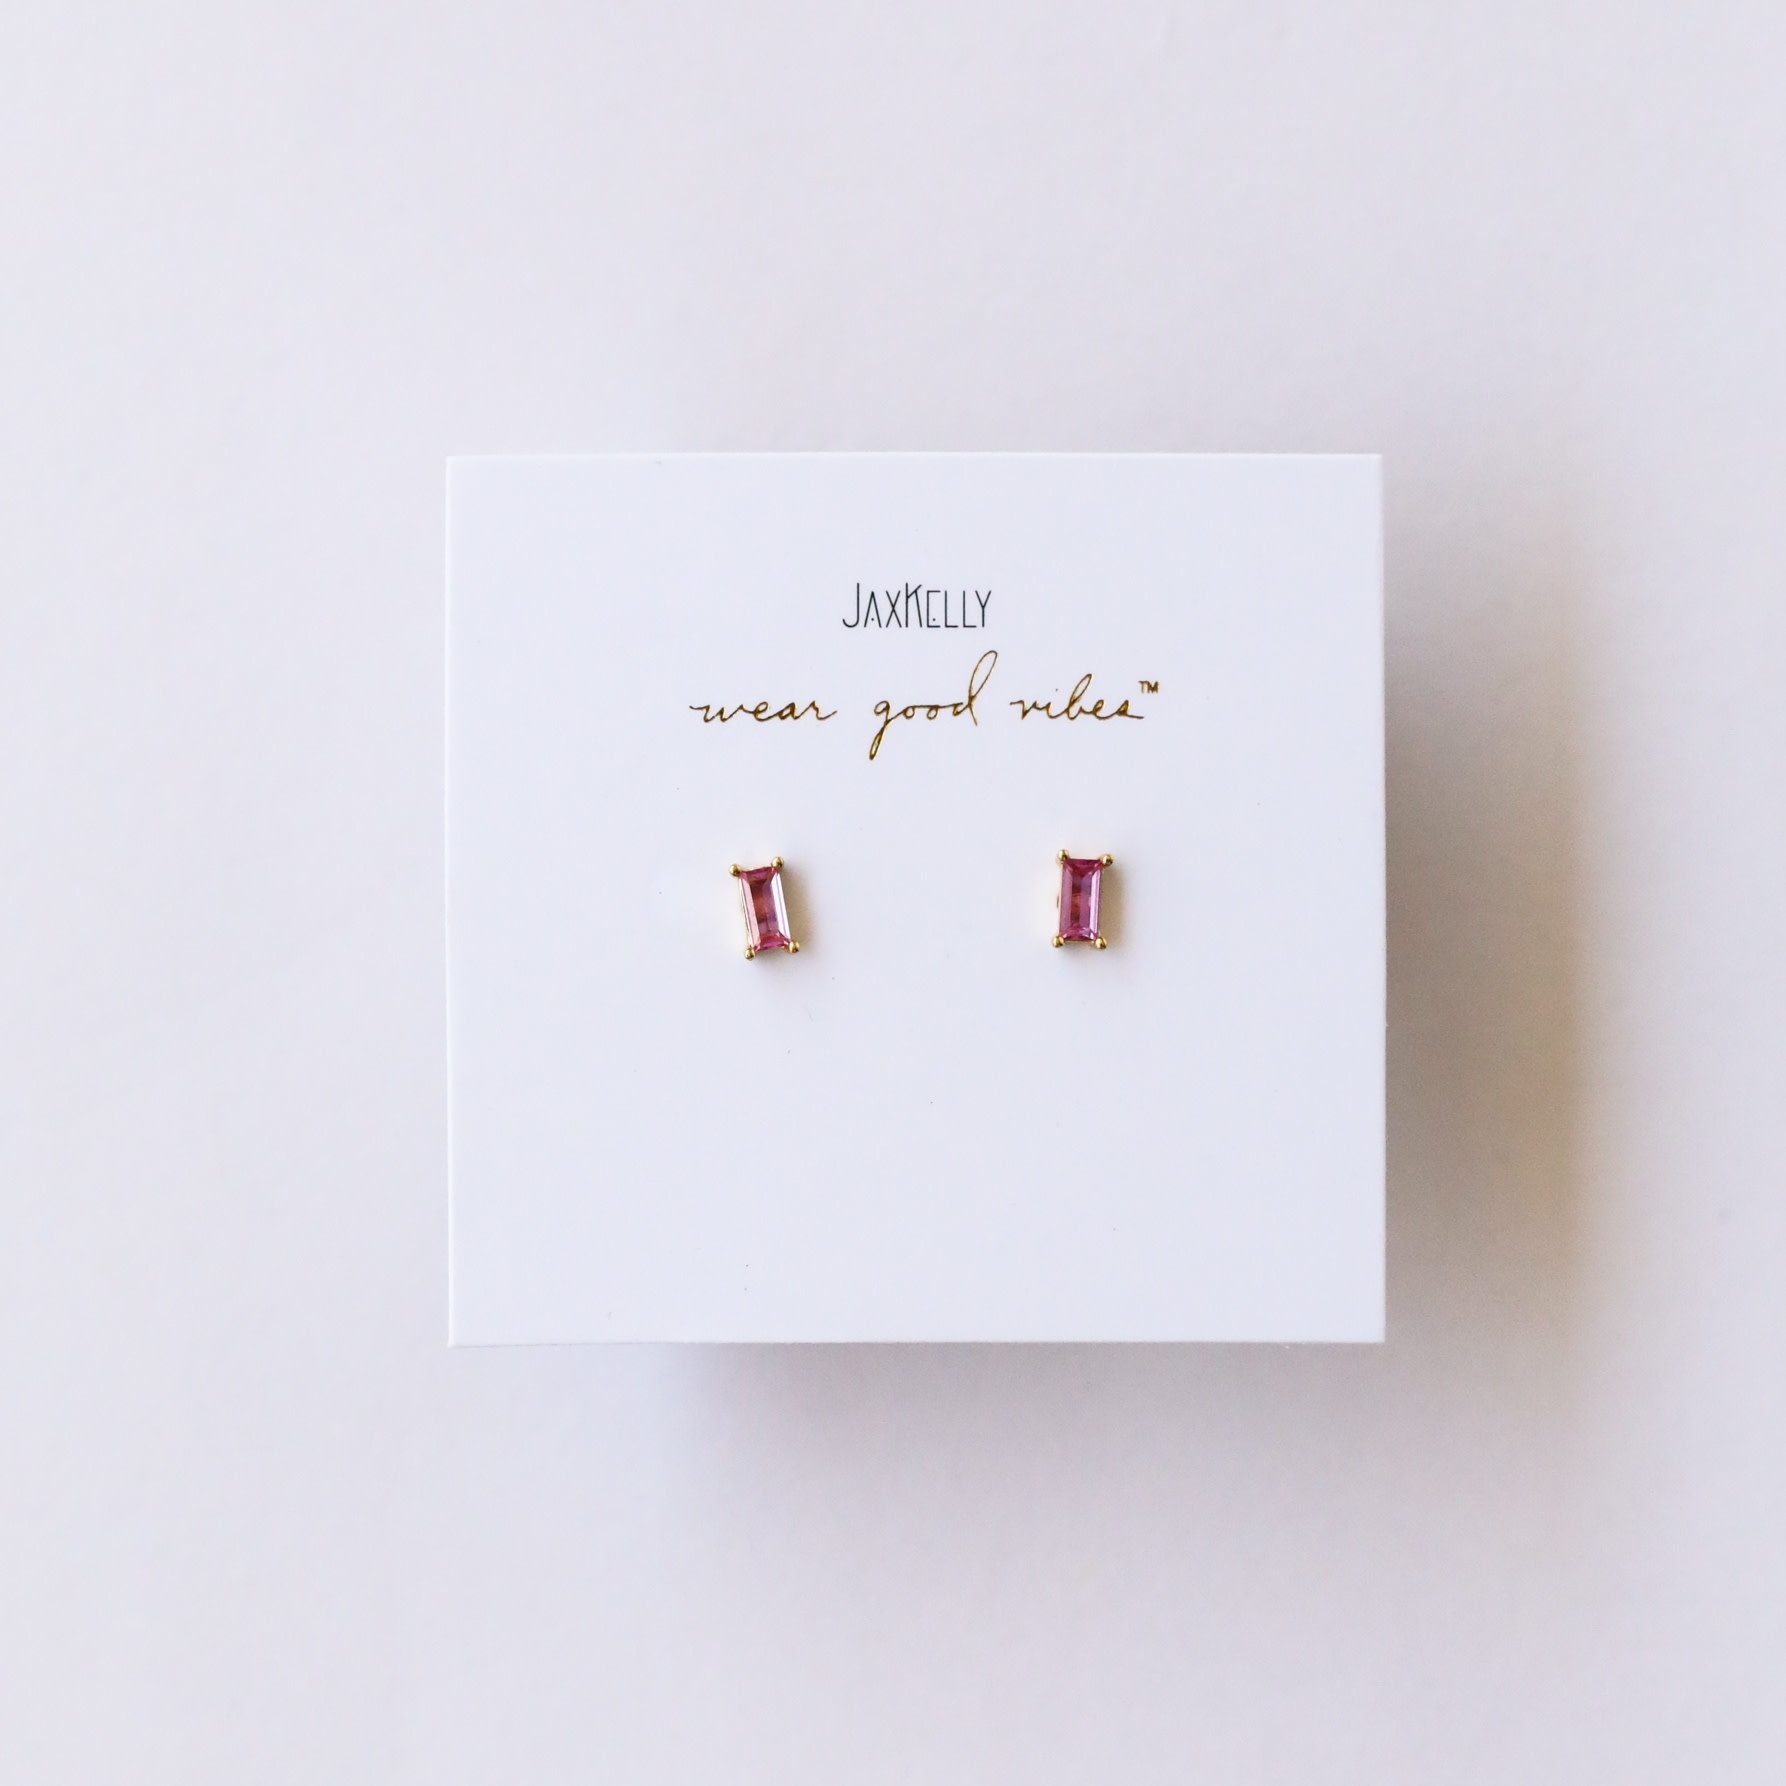 JaxKelly Baguette Earrings